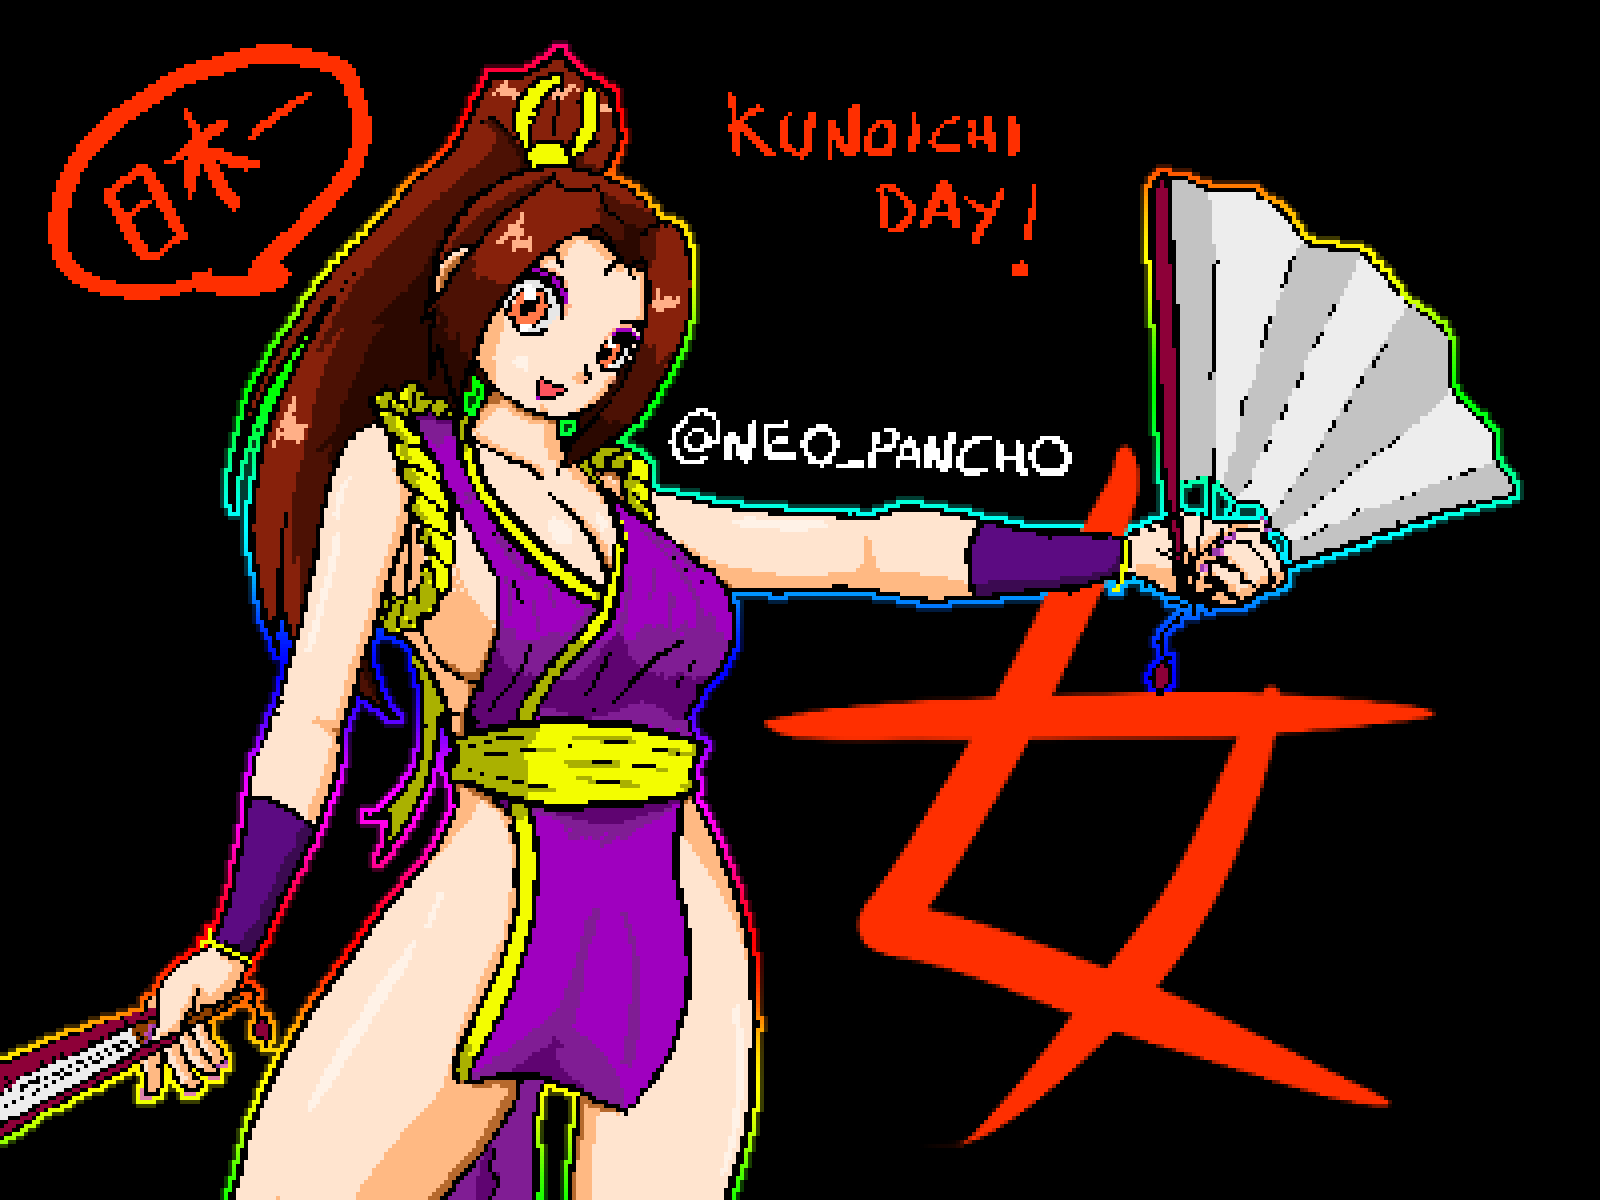 Mai Shiranui for the "Day of the kunoichis"